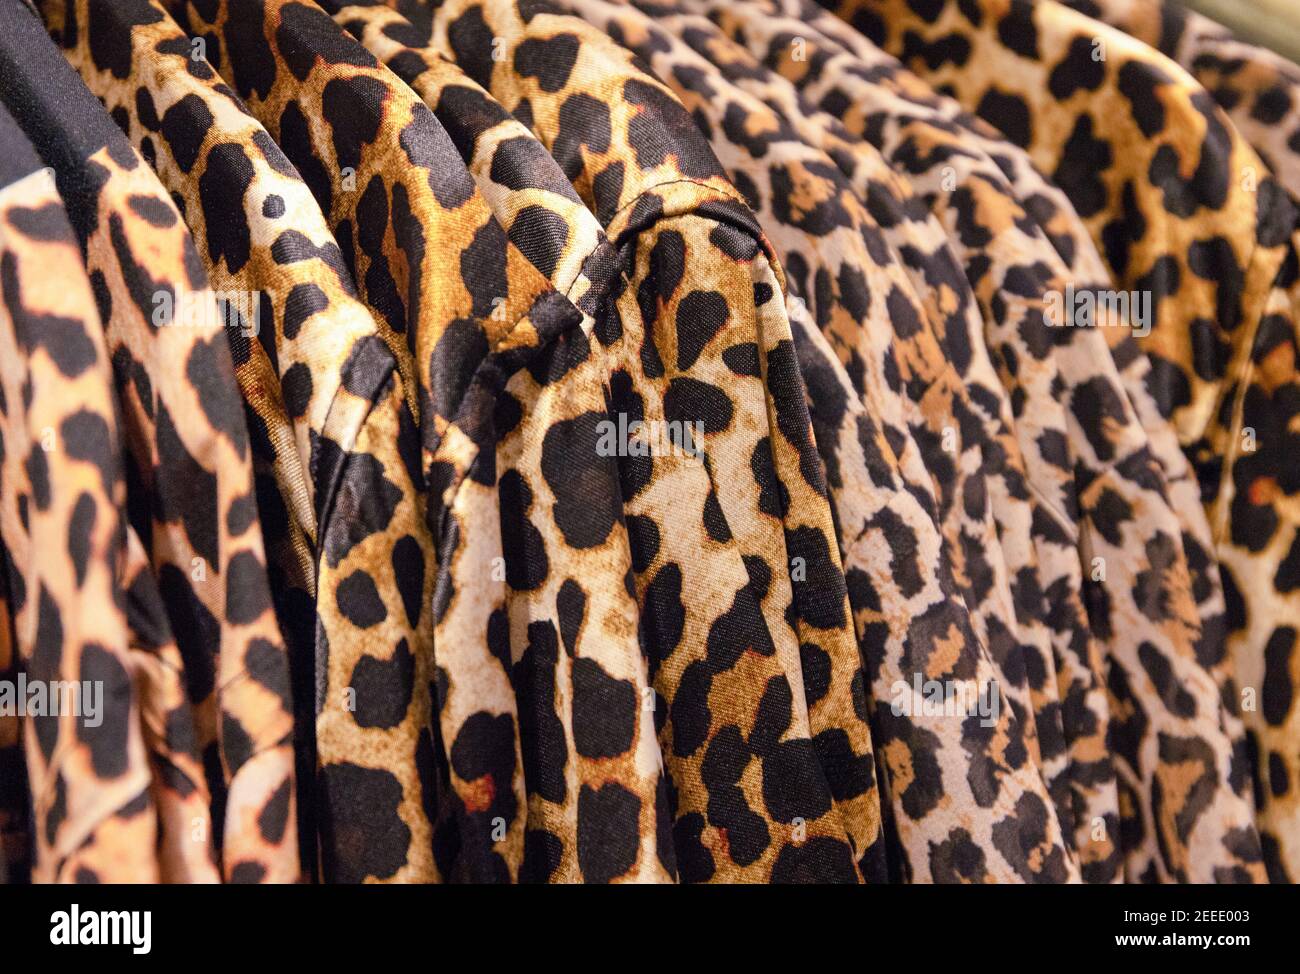 Ropa de leopardo colgada en una tienda de moda. Elegante estampado animal  en la parte superior de la prenda. Tienda de moda Black Friday. Tienda de  ropa. Secreto textil Fotografía de stock -